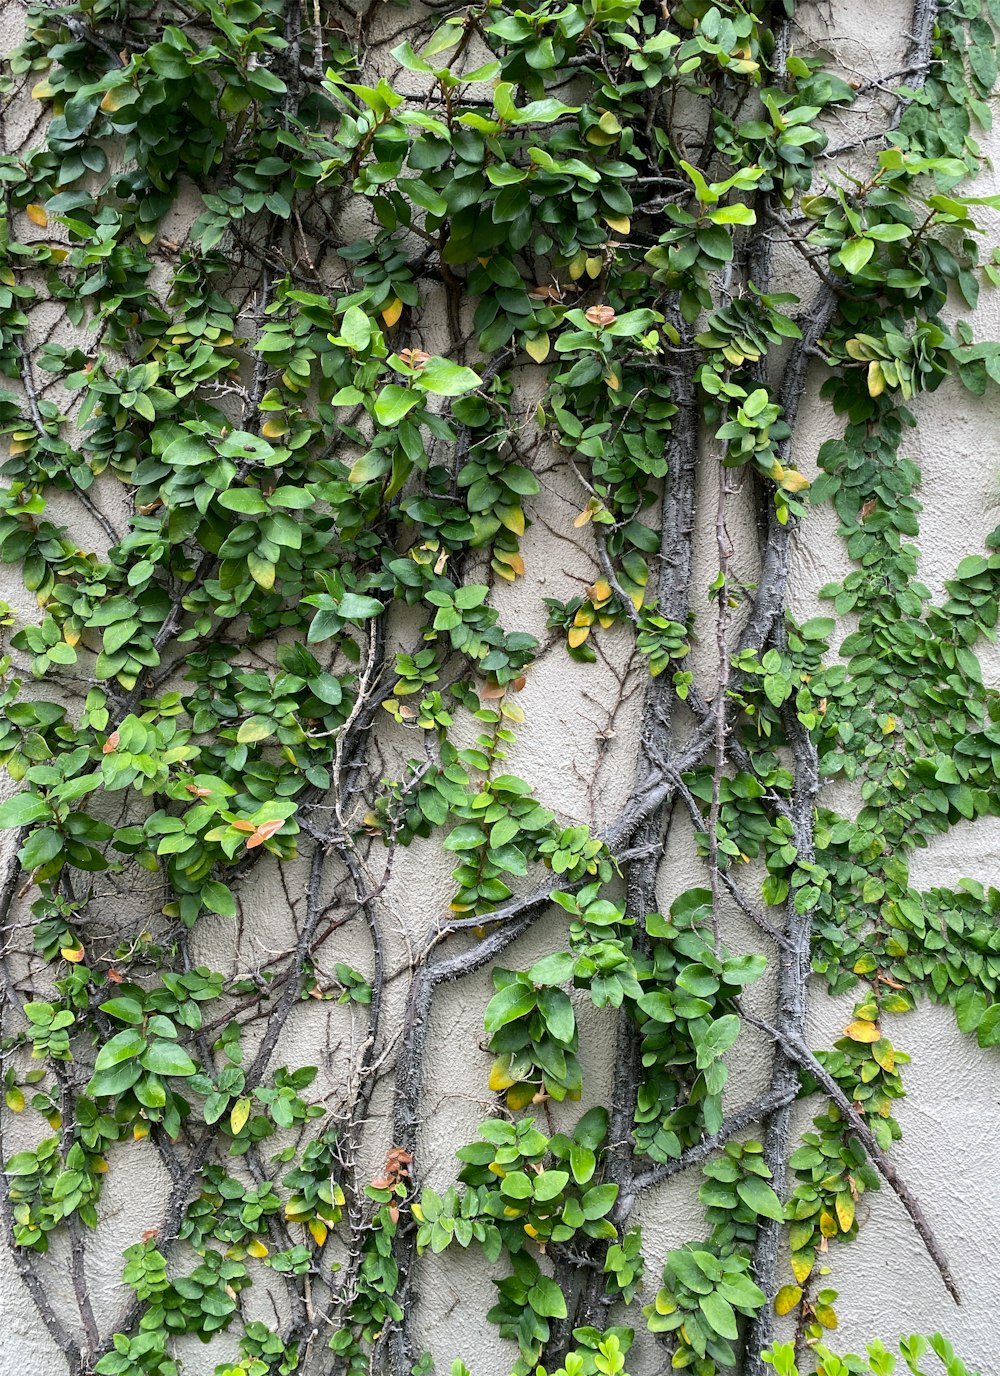 덩굴과 녹색 잎으로 덮인 벽